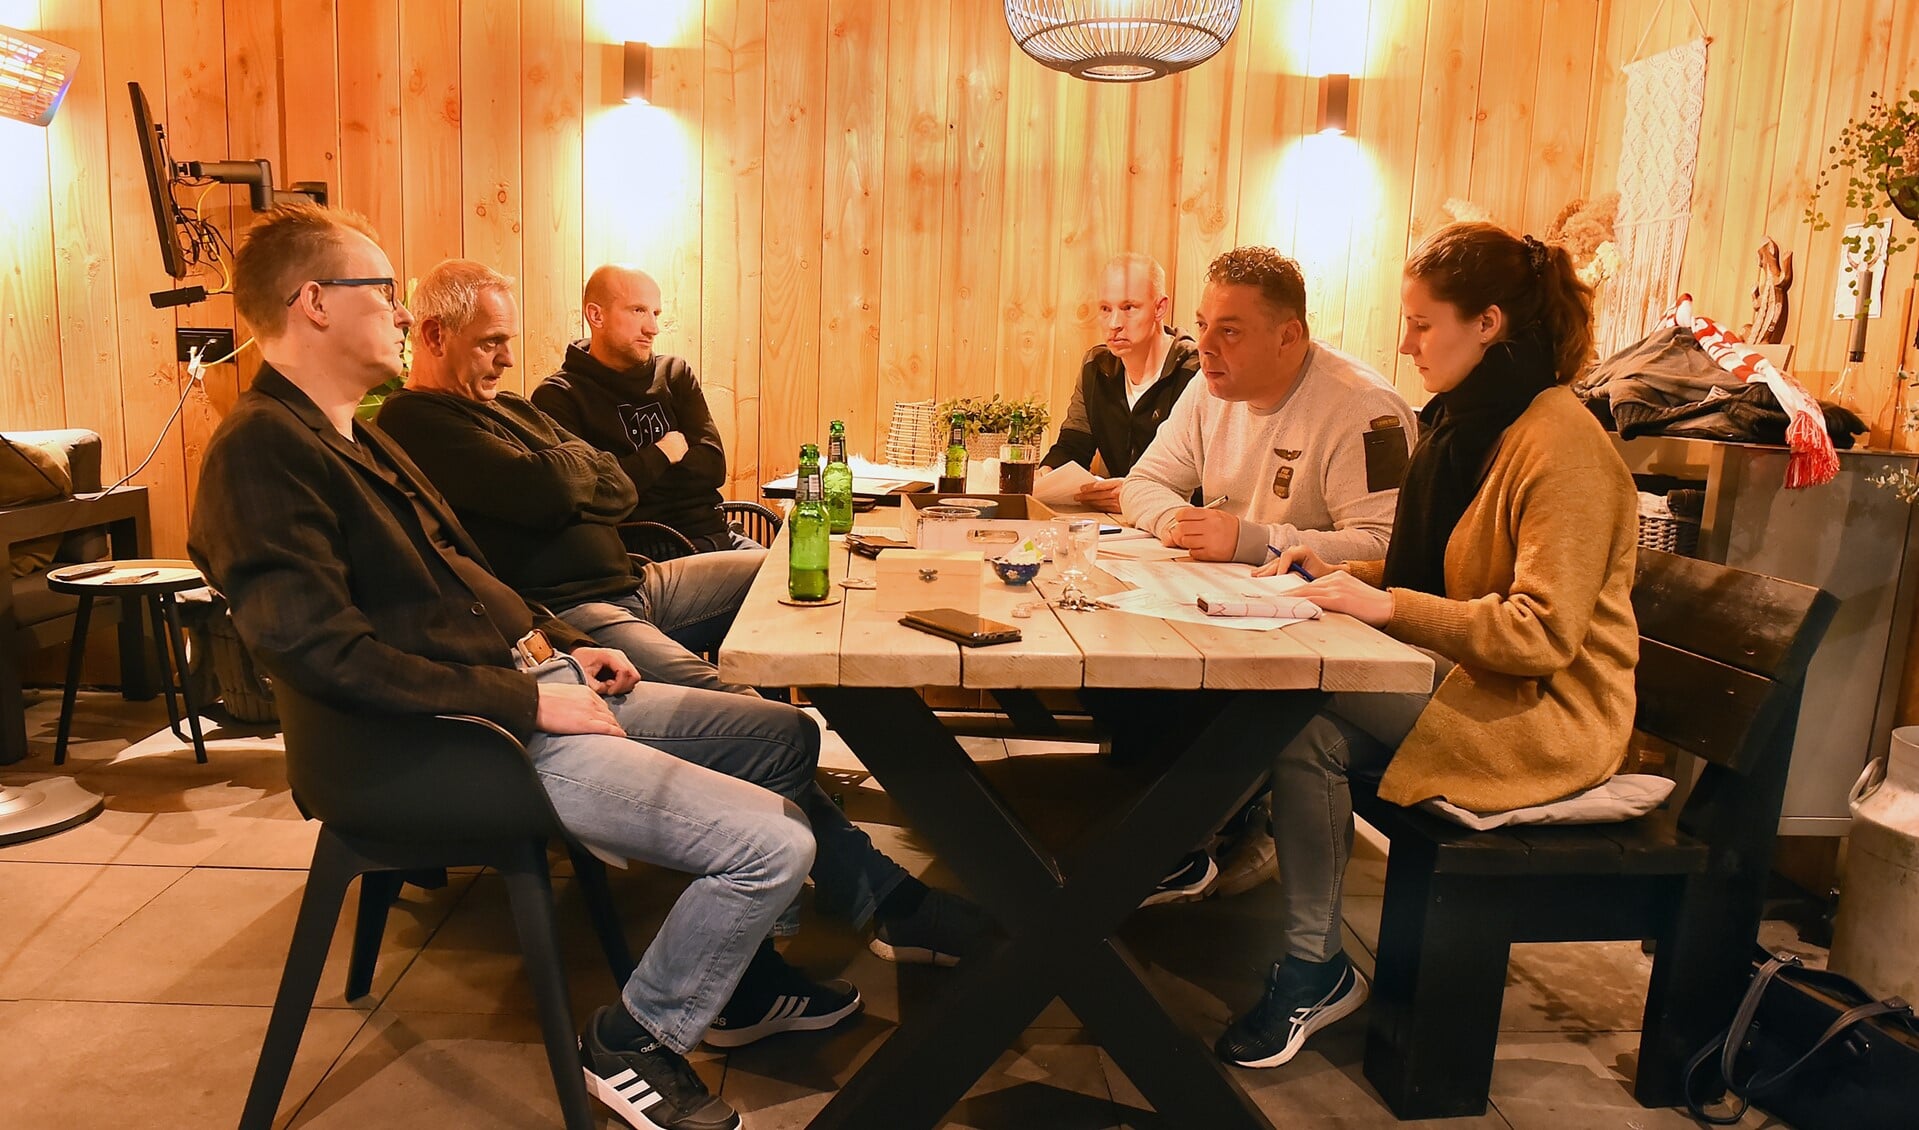 Vlnr: Remco van Aken, Jurgen ten Have, Bas Roes, Lars Tönis, Sander Klomberg en Nicol Pothoff. Foto: Roel Kleinpenning